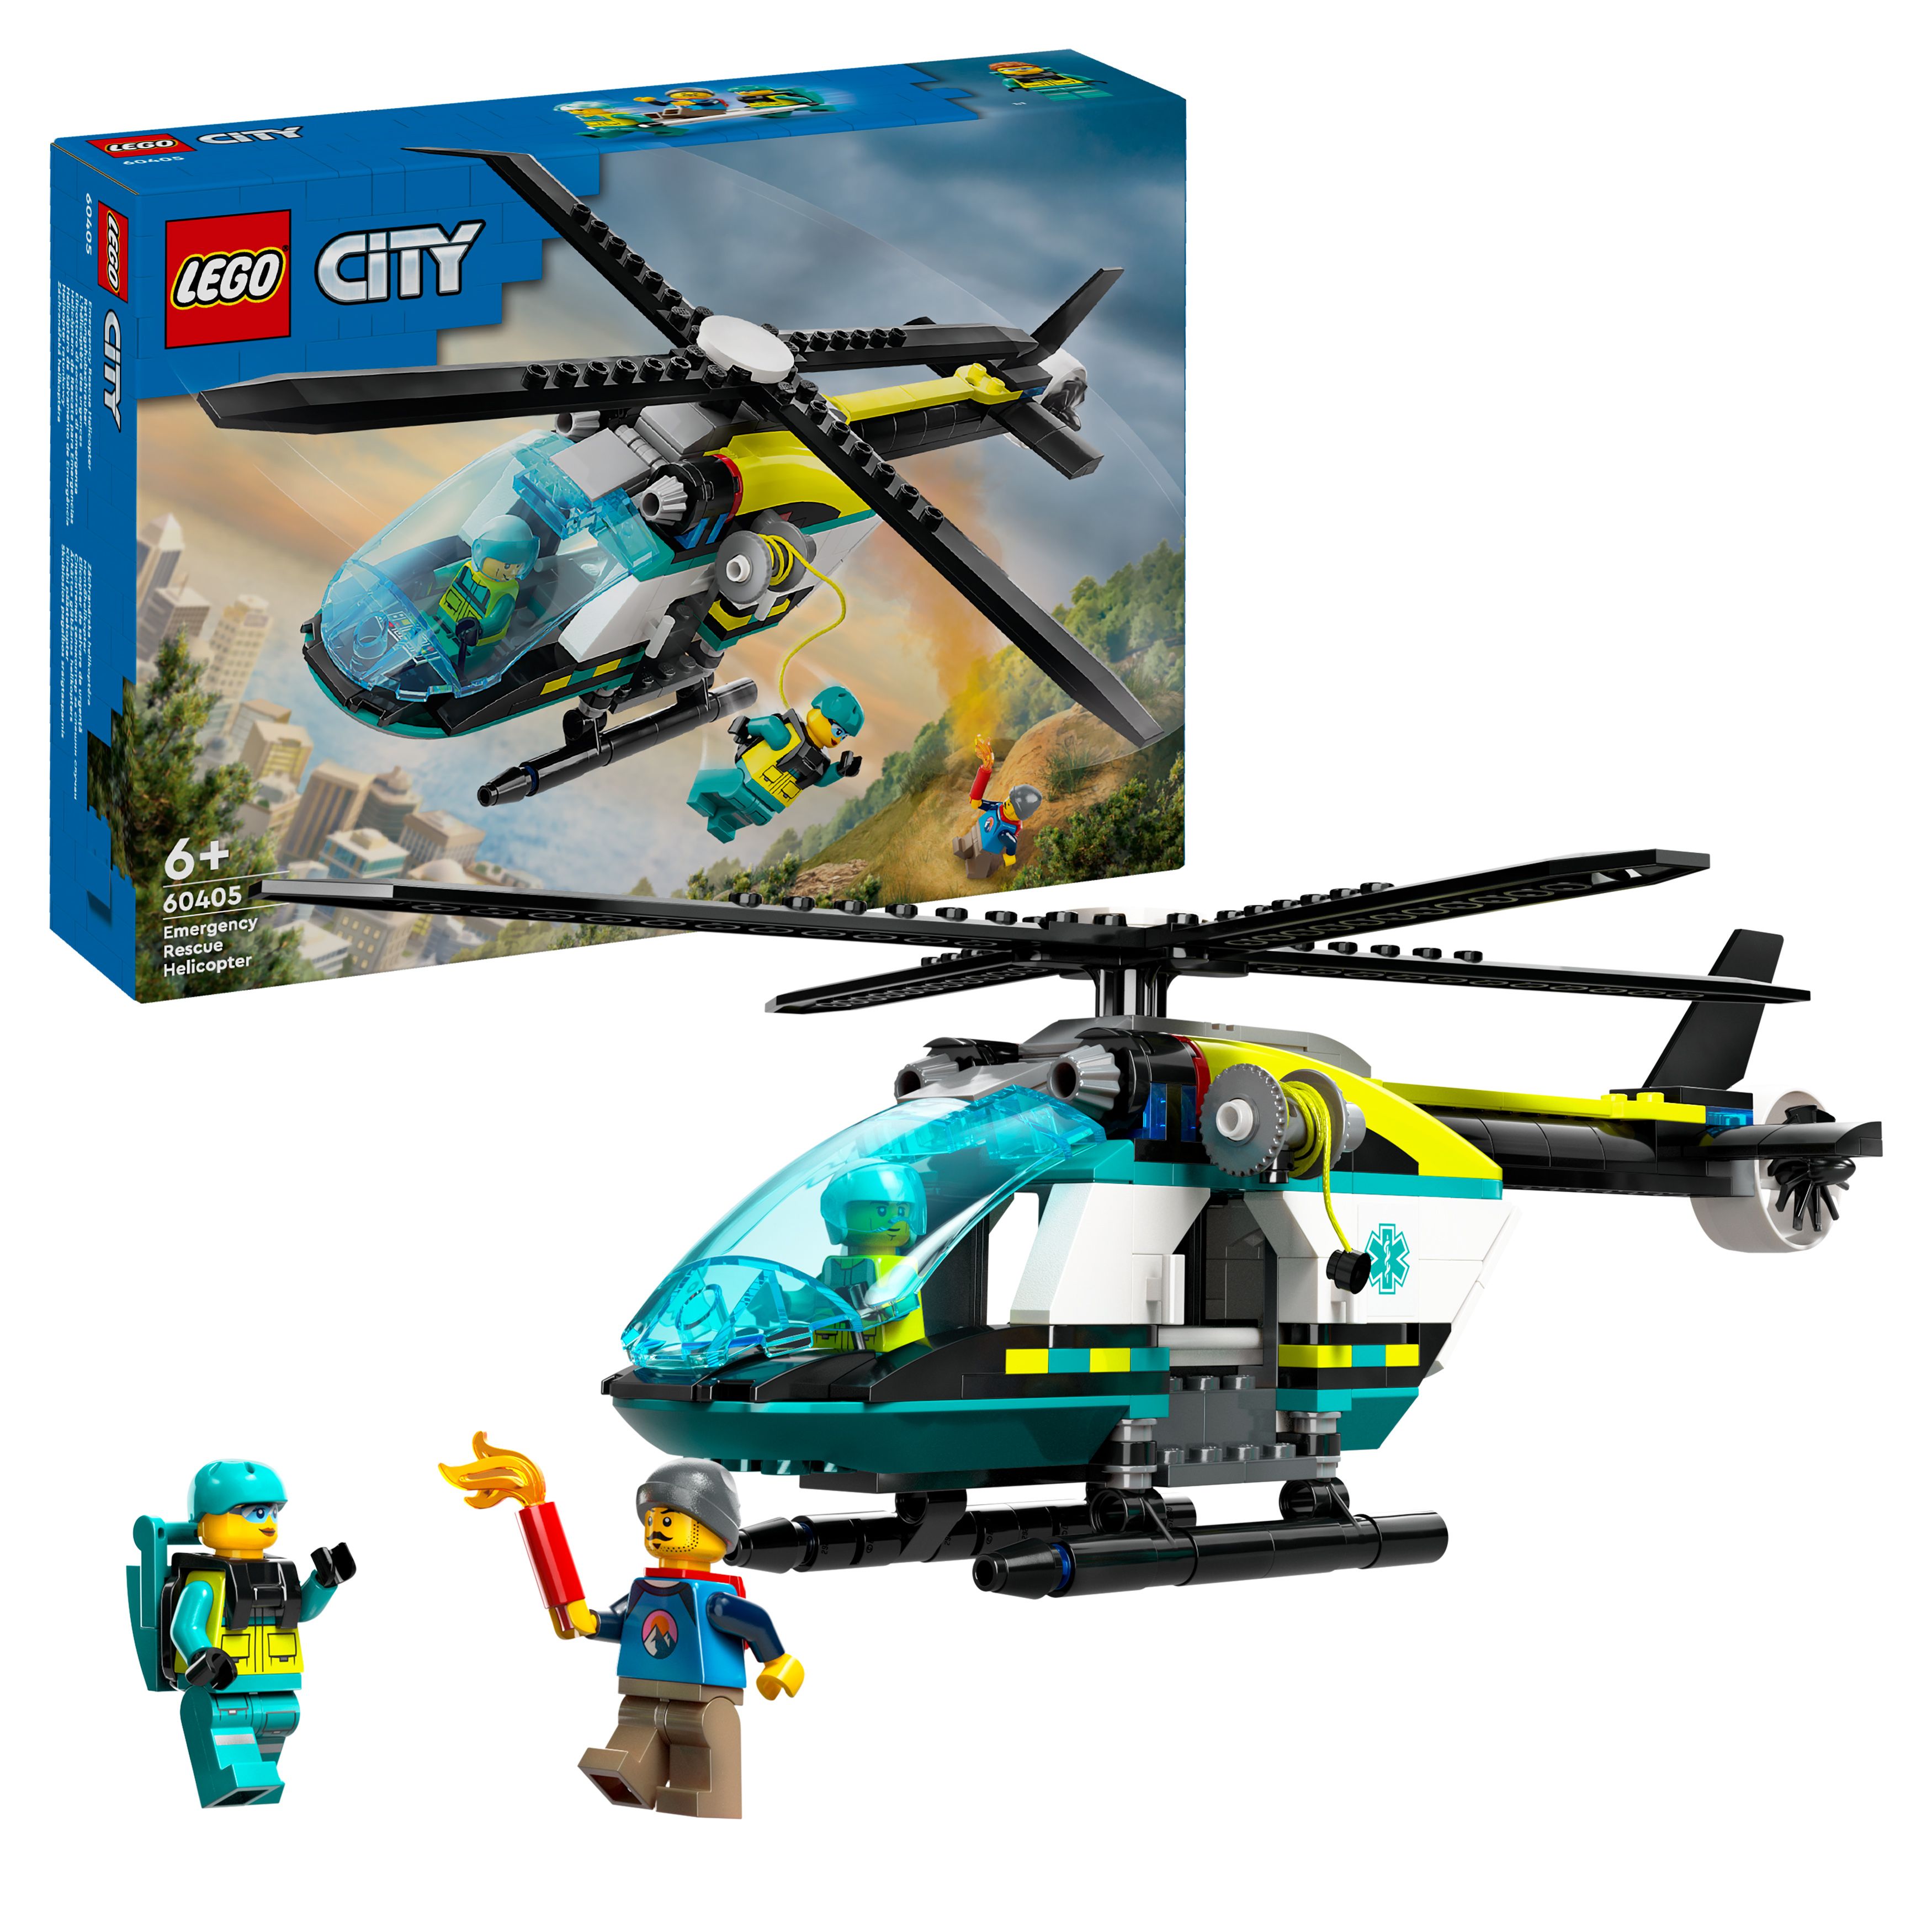 LEGO City - Redningshelikopter (60405) - Leker